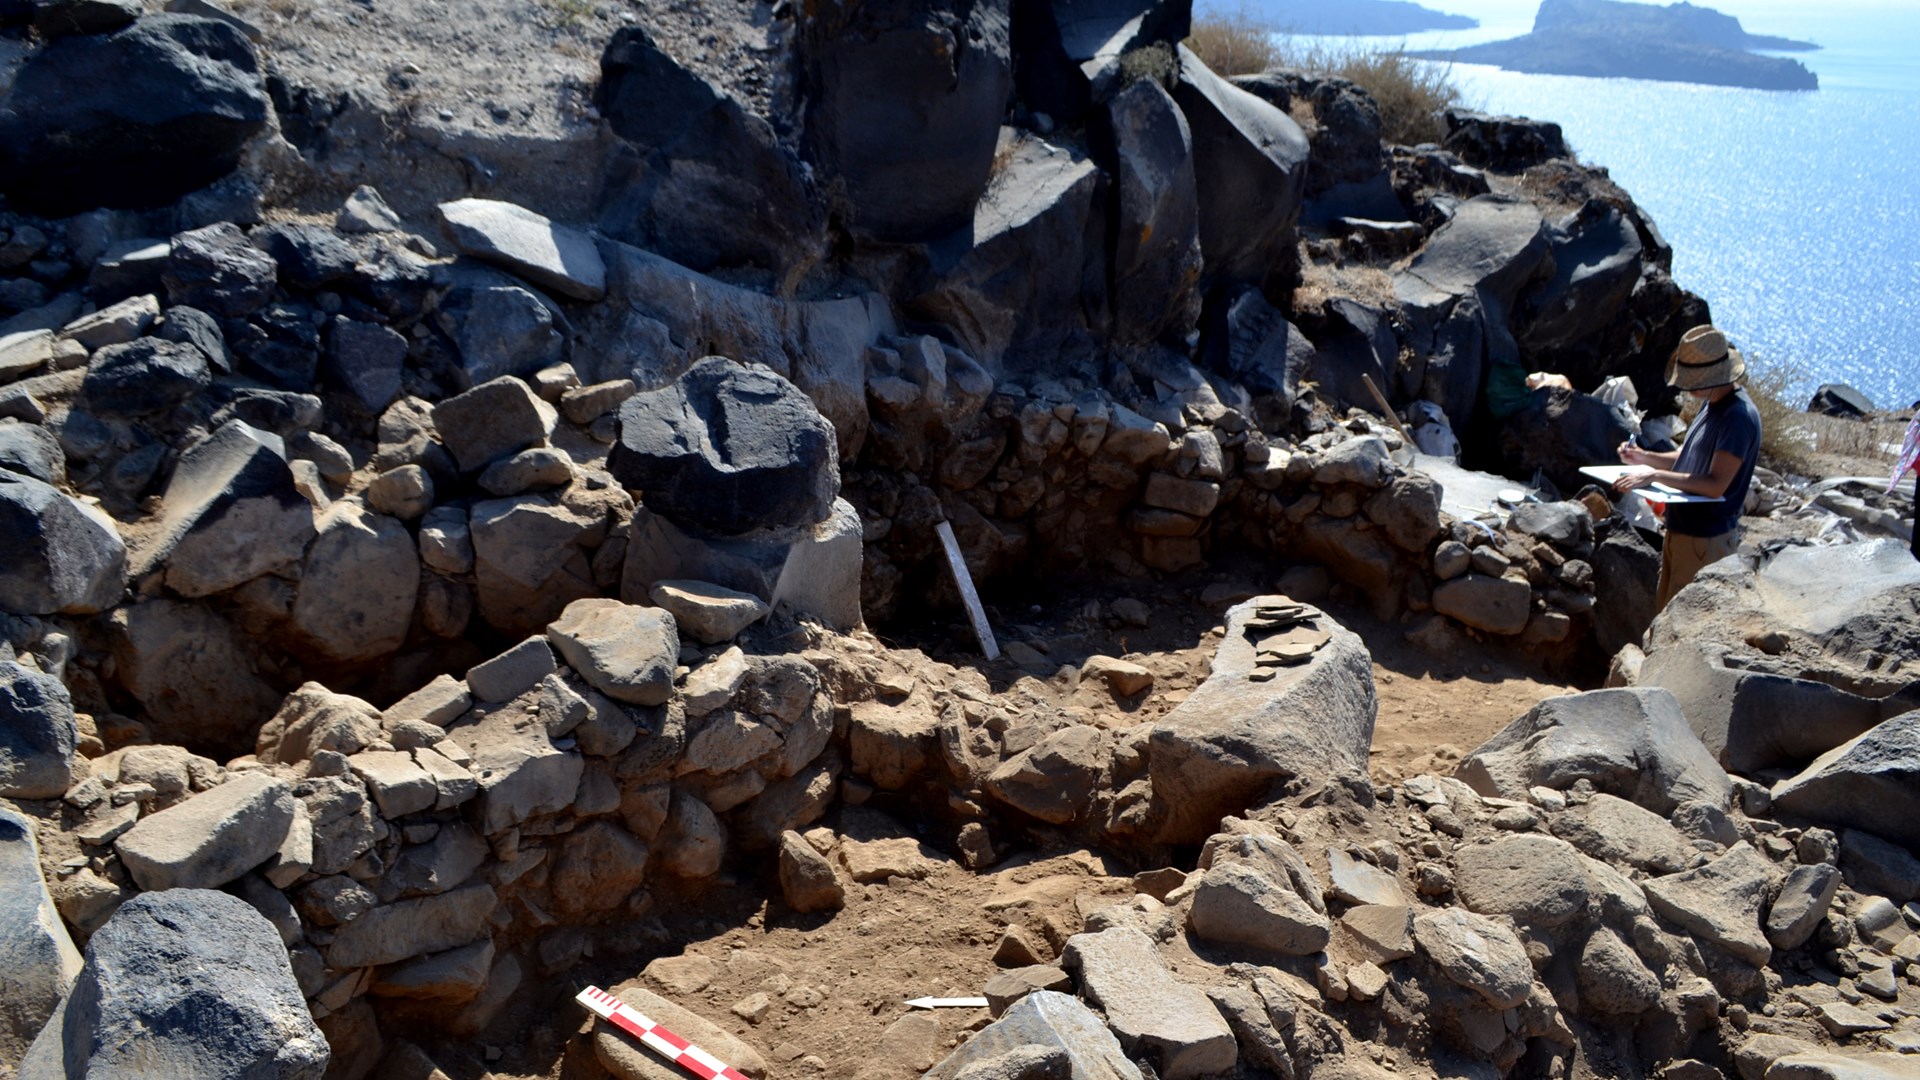 Αποκαλύφθηκε προϊστορικός οικισμός της Εποχής του Χαλκού στη Σαντορίνη – Εντυπωσιακές ΦΩΤΟ